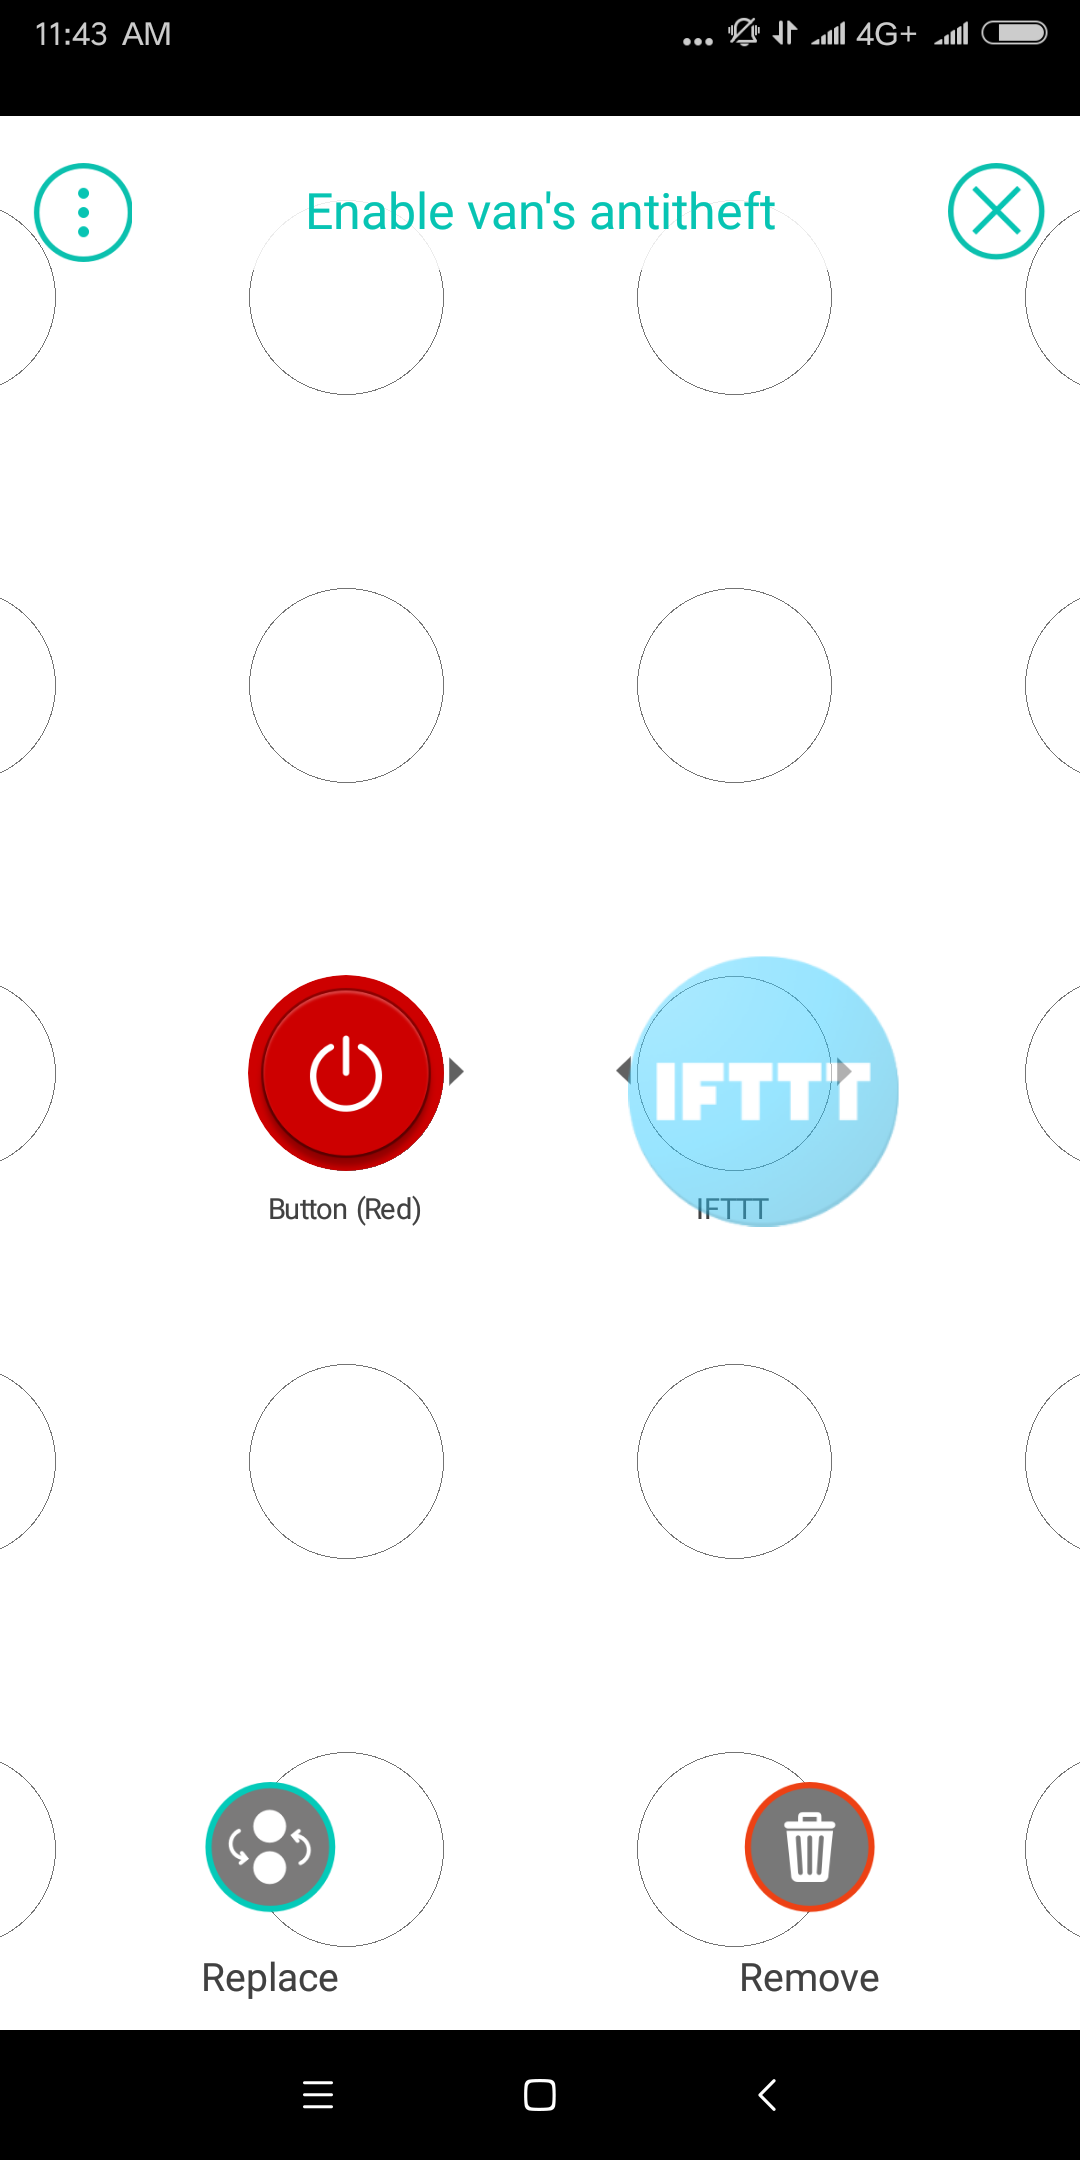 il processo di integrazione IFTTT permette a MyWakes di connettersi ad altre piattaforme IOT come Stringify, Microsoft Flow e Zapier